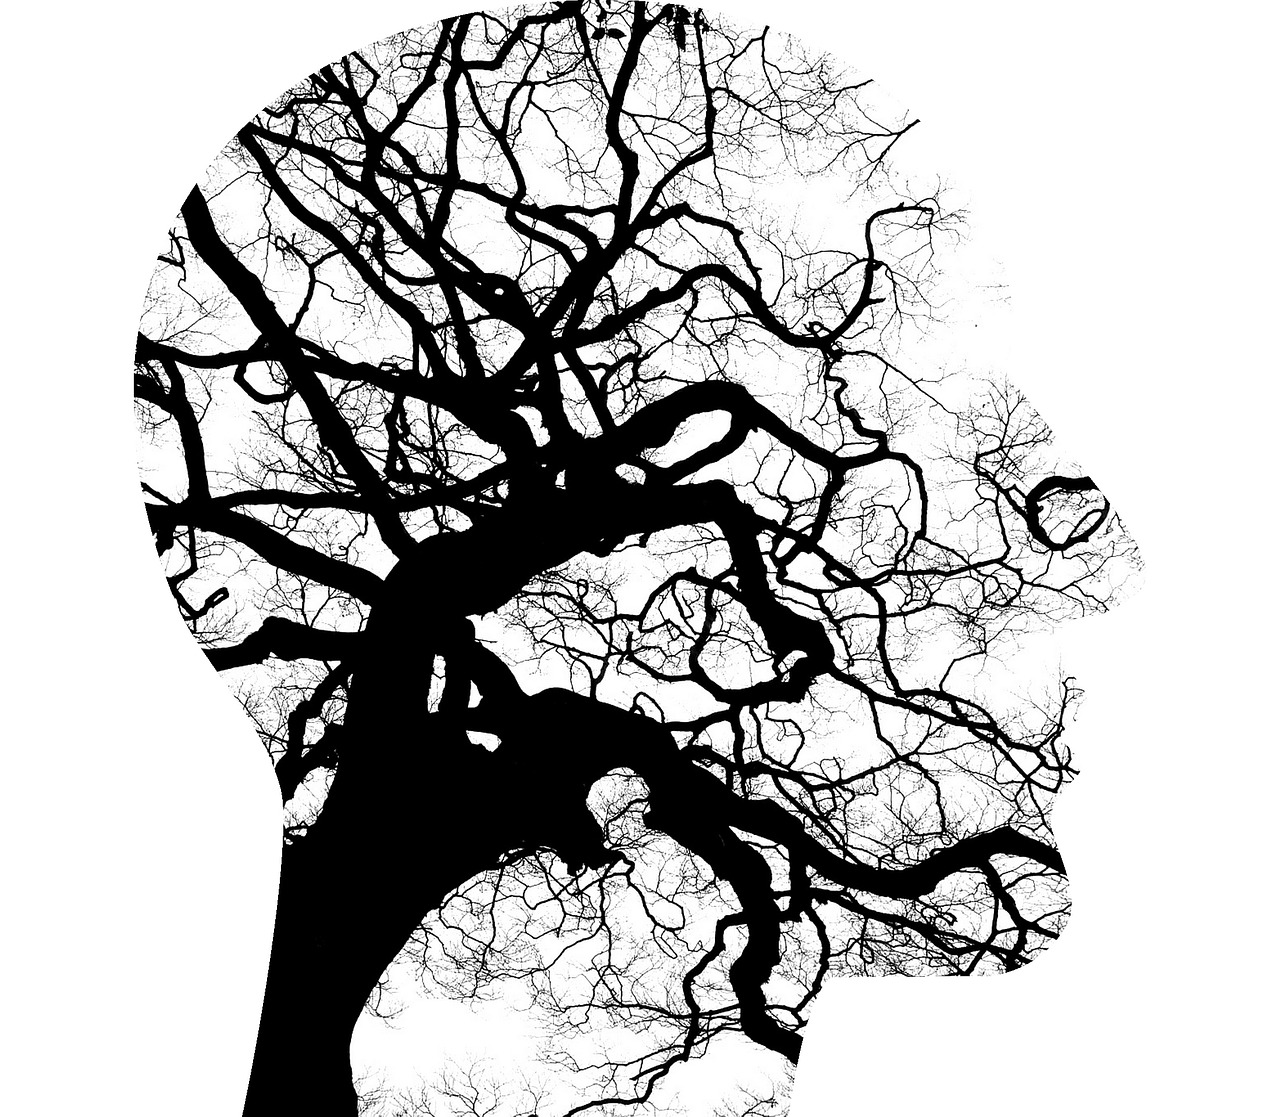 Psichinė Sveikata, Smegenys, Mąstymas, Medžių Šakos, Sutrikimas, Psichiatrija, Protinis, Neurologija, Stresas, Nerimas